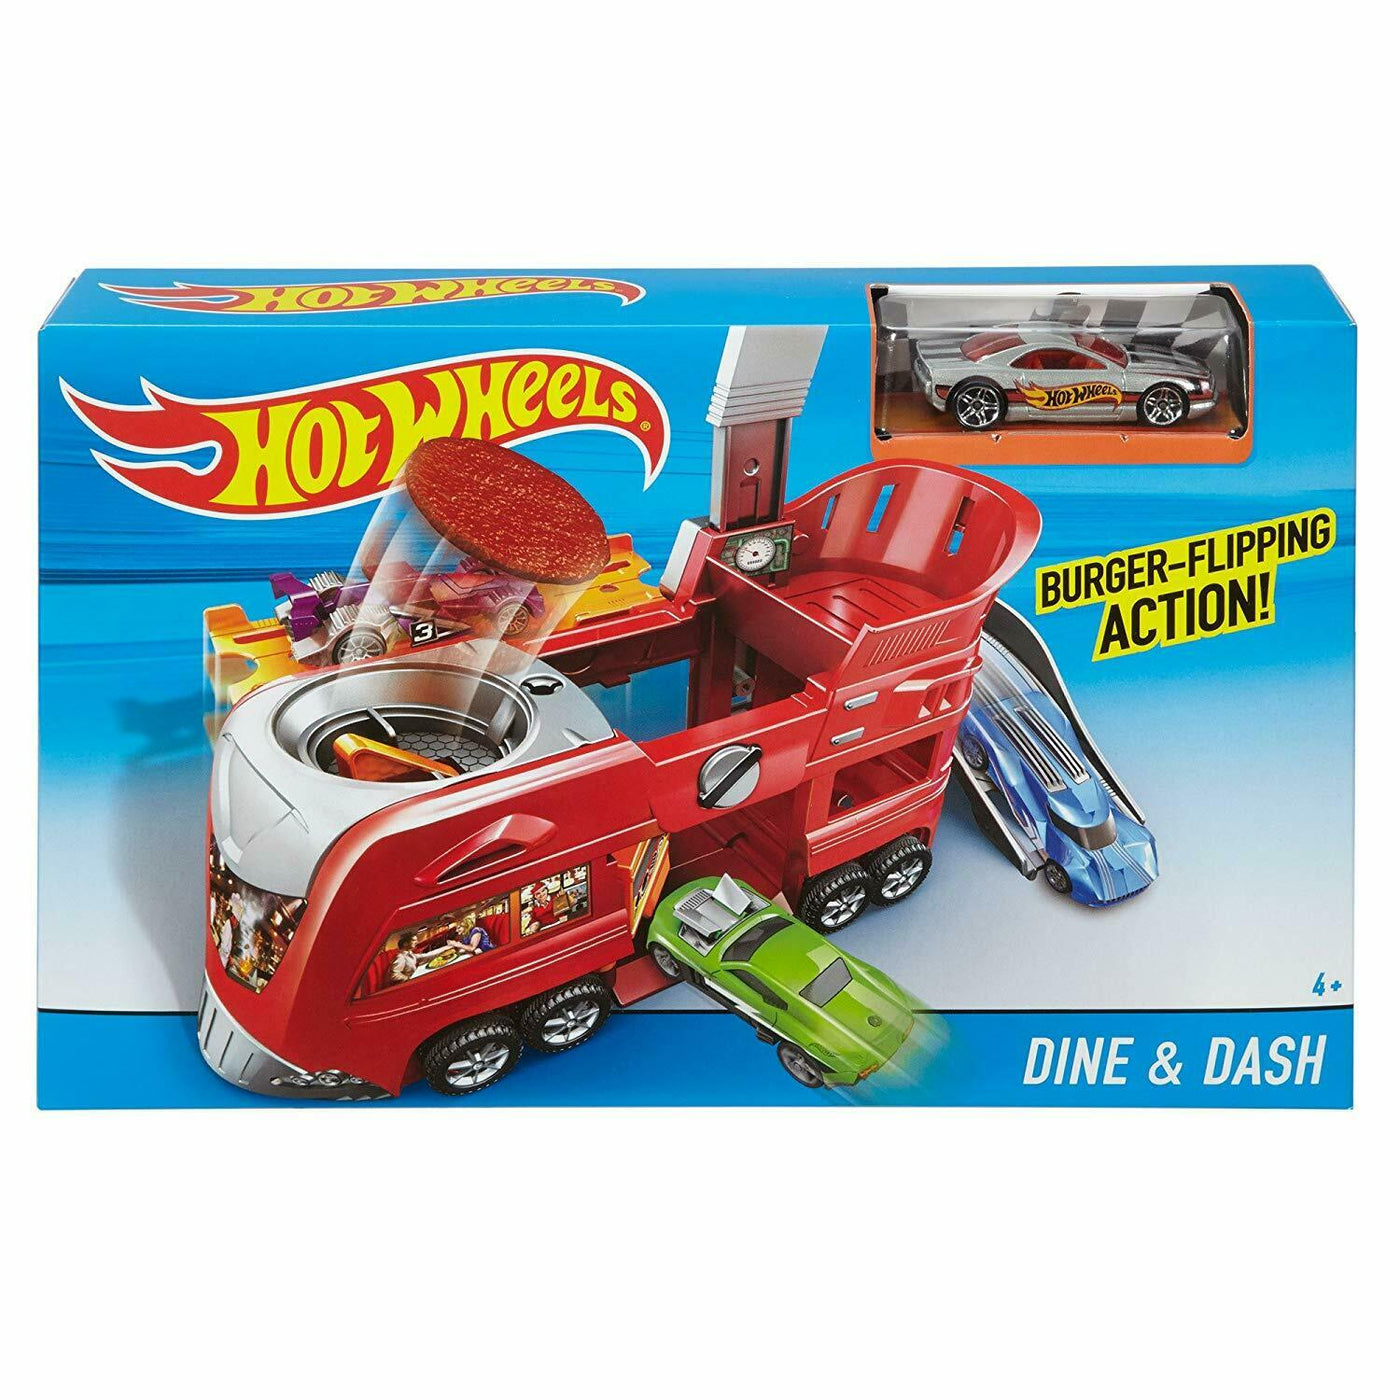 Dine & Dash - Playset | Hot Wheels®